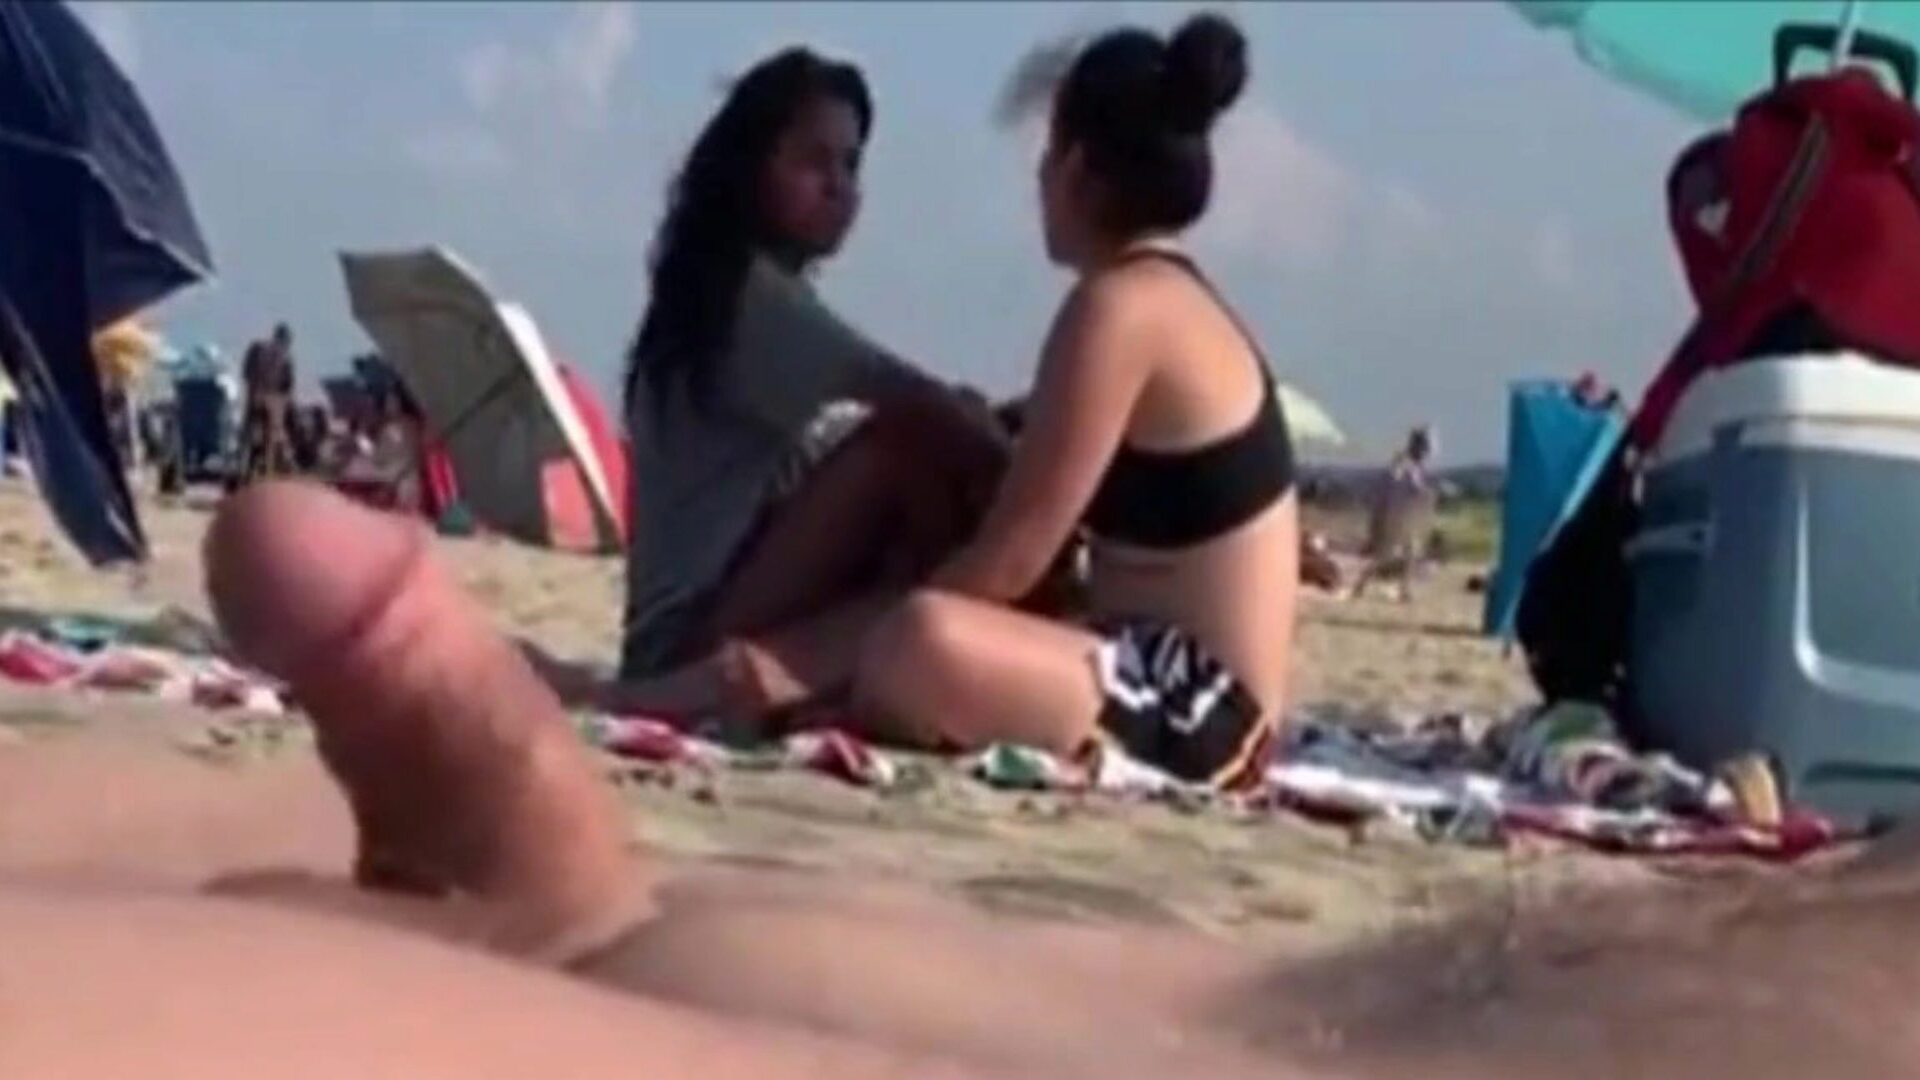 dwie dziewczyny obserwują moją walkę na publicznej plaży dwie piękności opiekują się mną przy mojej wang, puszczają je ..